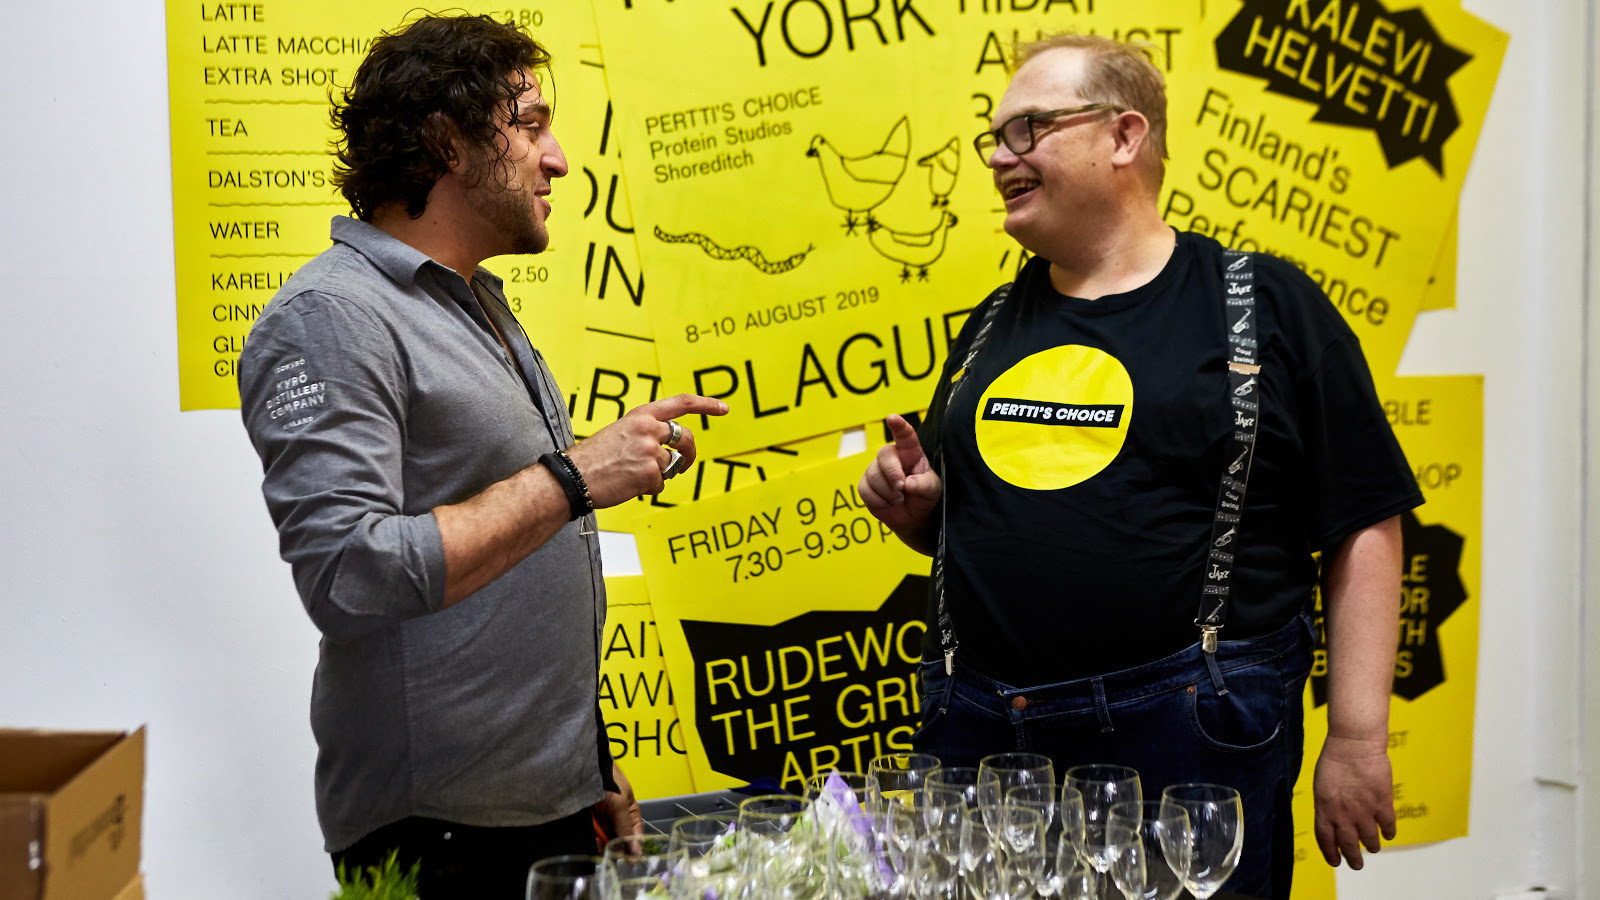 Kuvassa on Pertin Valinnan Sami Helle oikealla ja Kyrö Distilleryn edustaja kesksutelemassa edessään pöytä, jossa on laseja. Takana on keltaisella pohjalla julisteita mustalla tekstillä.